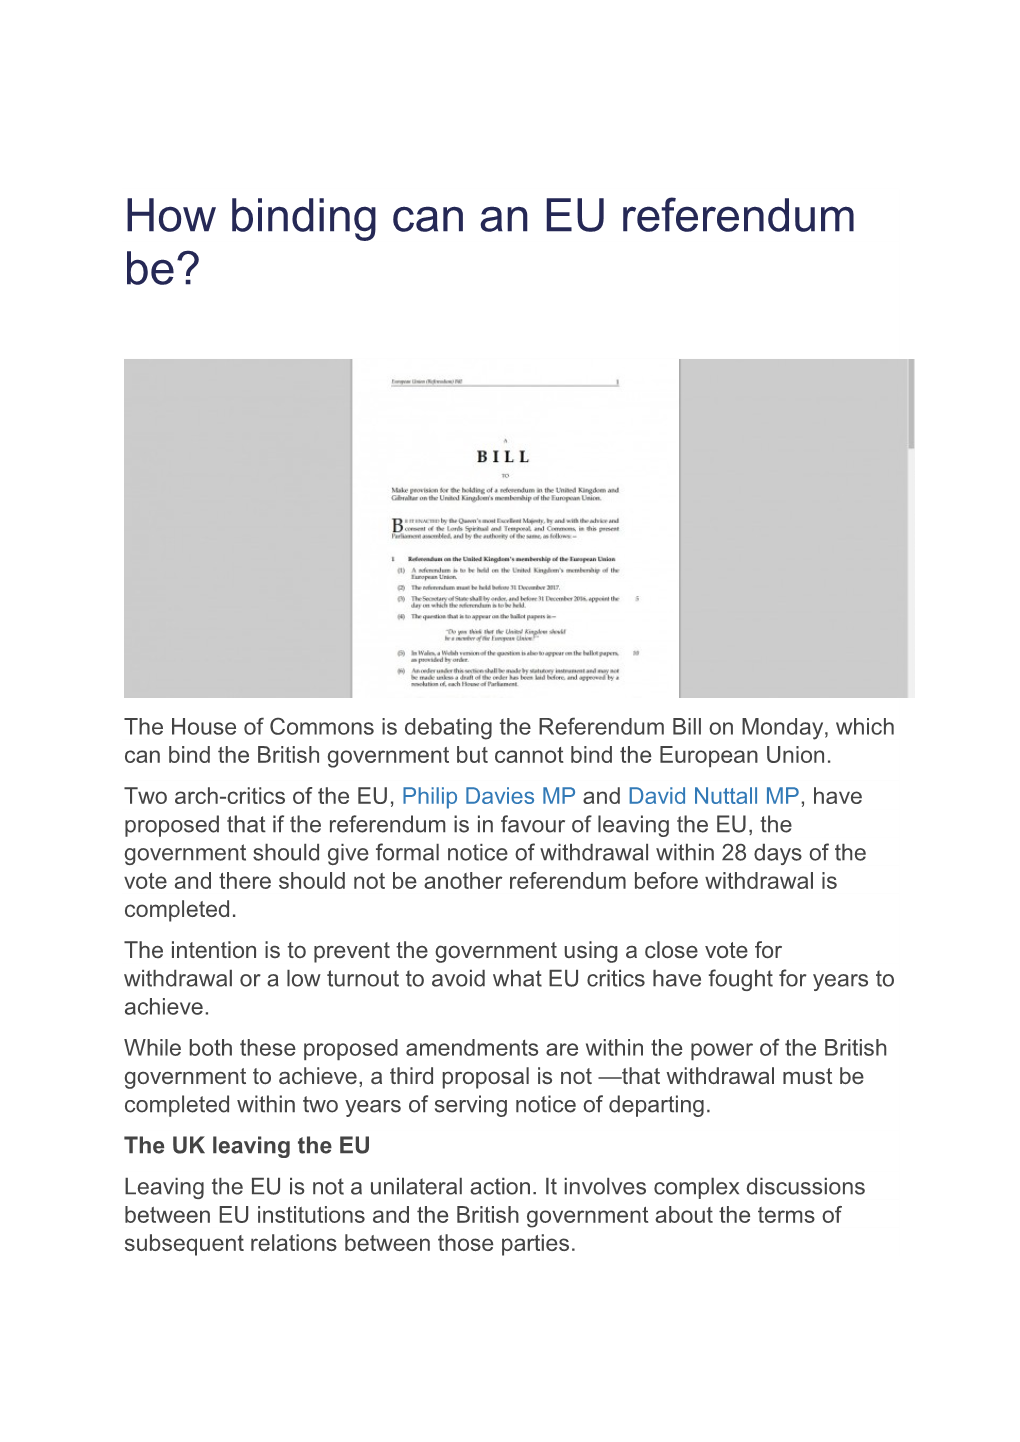 How Binding Can an EU Referendum Be?